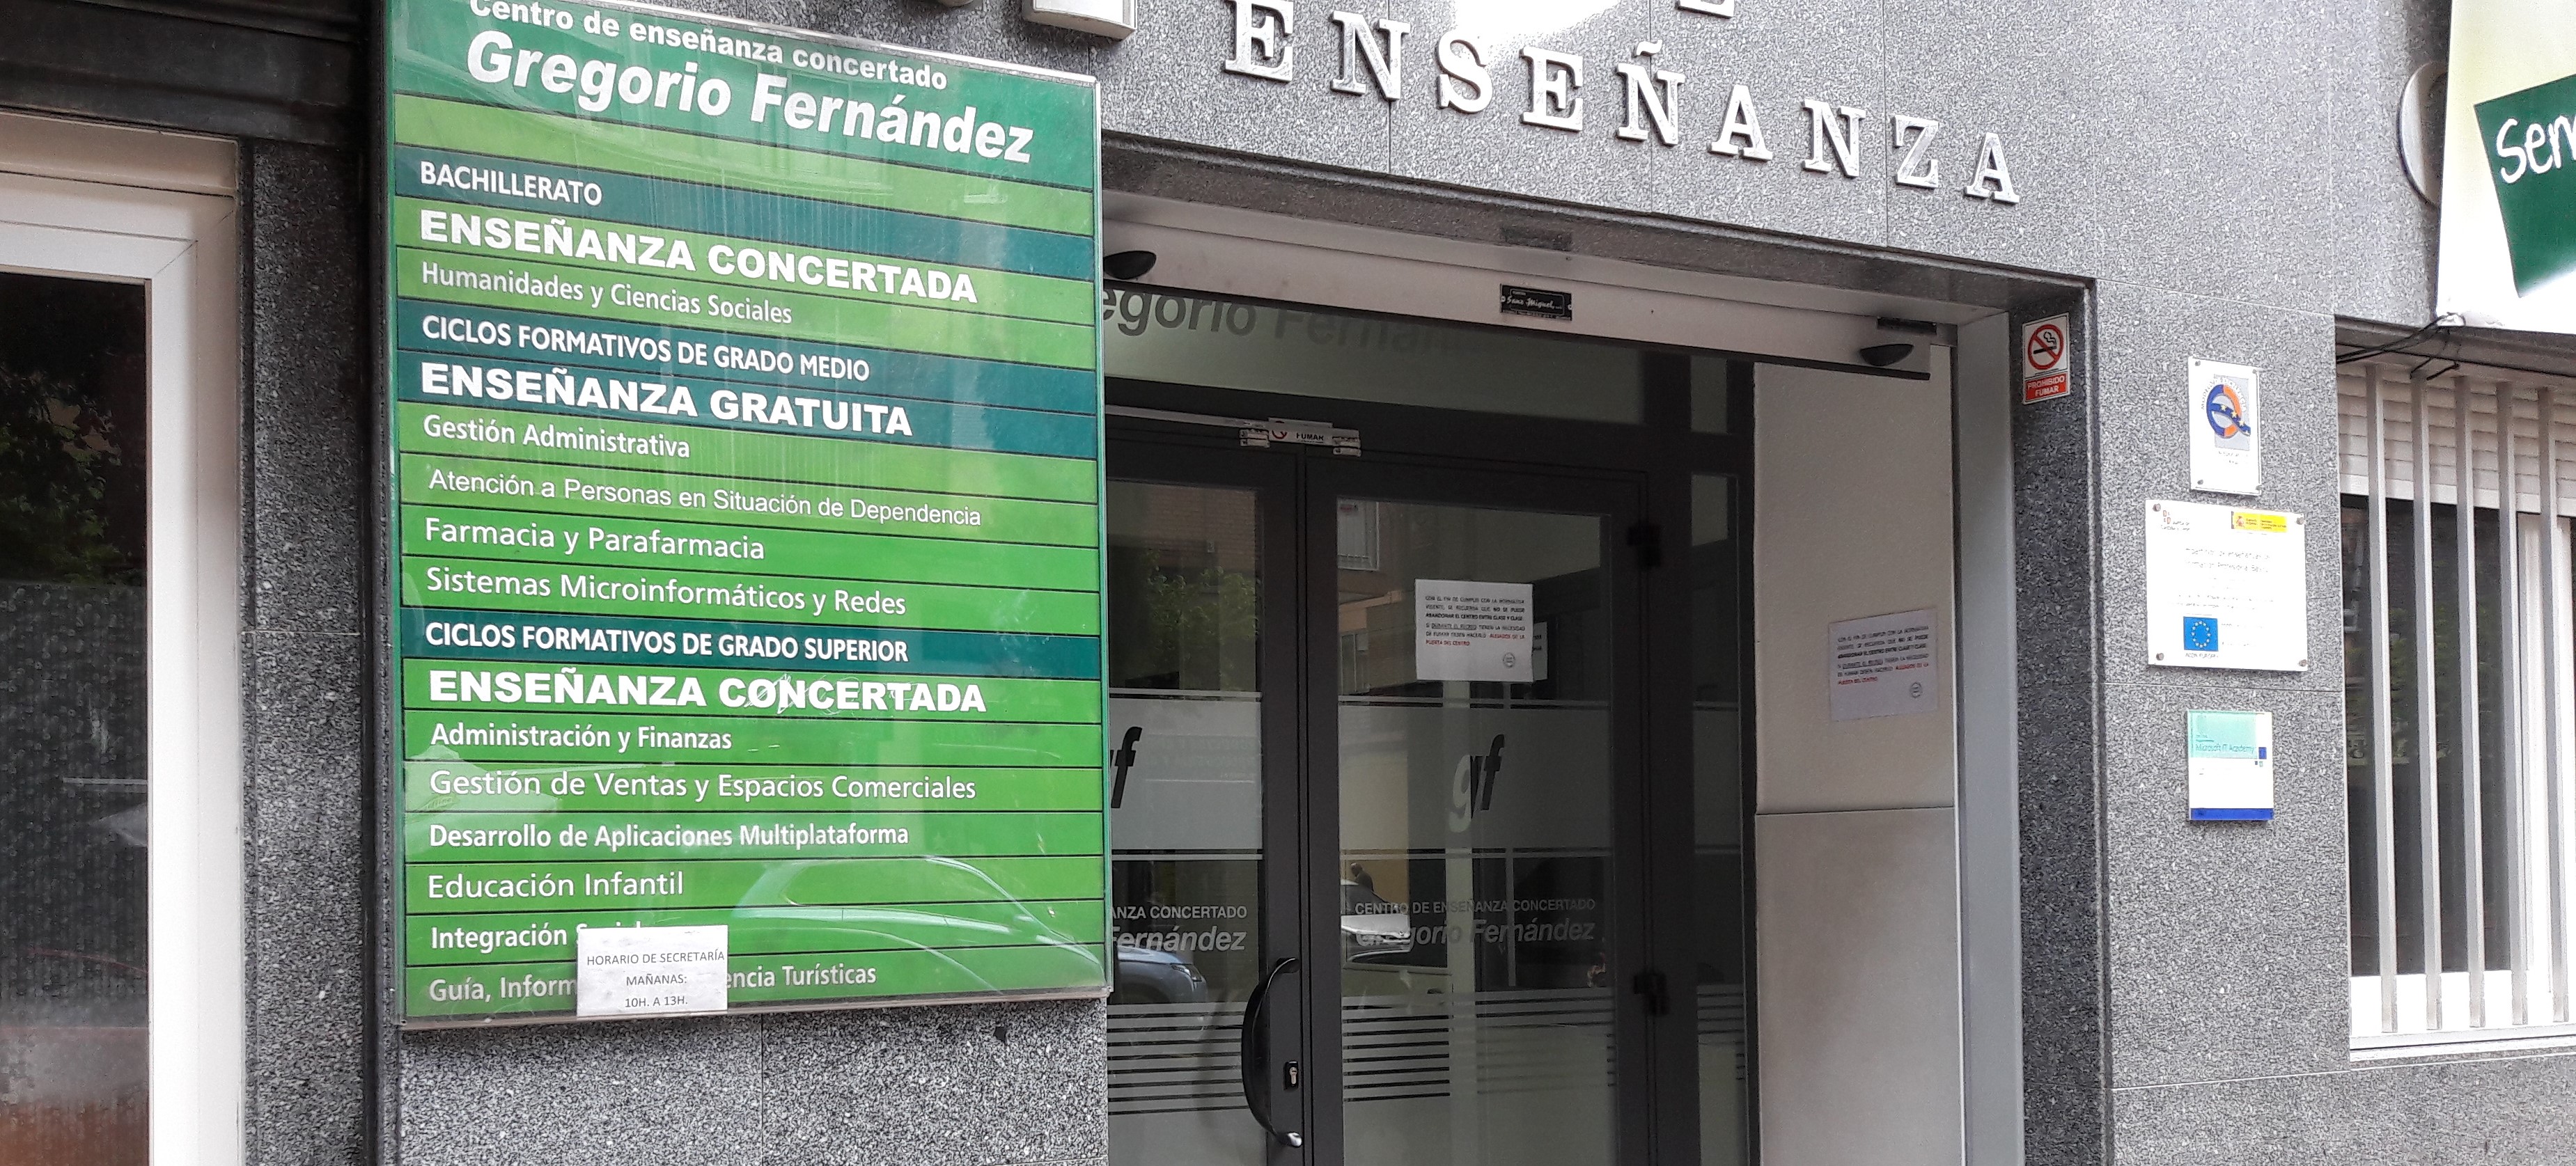 lavandería volatilidad lecho Plazas Vacantes en Formación Profesional Valladolid | Centro de Enseñanza  GREGORIO FERNÁNDEZ